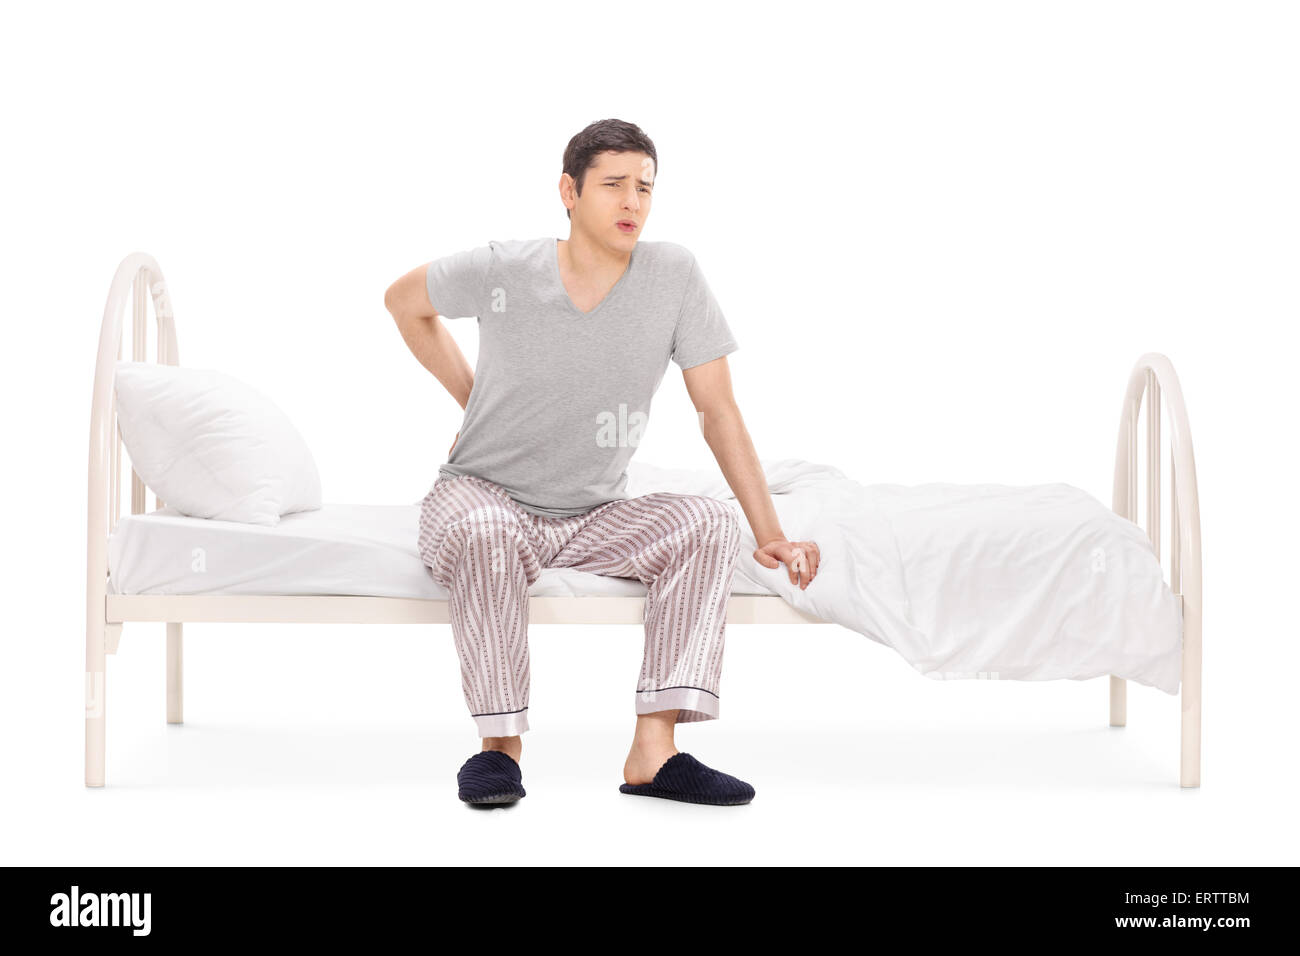 Jeune homme ayant un mal de dos assis sur un lit dans son pyjama isolé sur fond blanc Banque D'Images